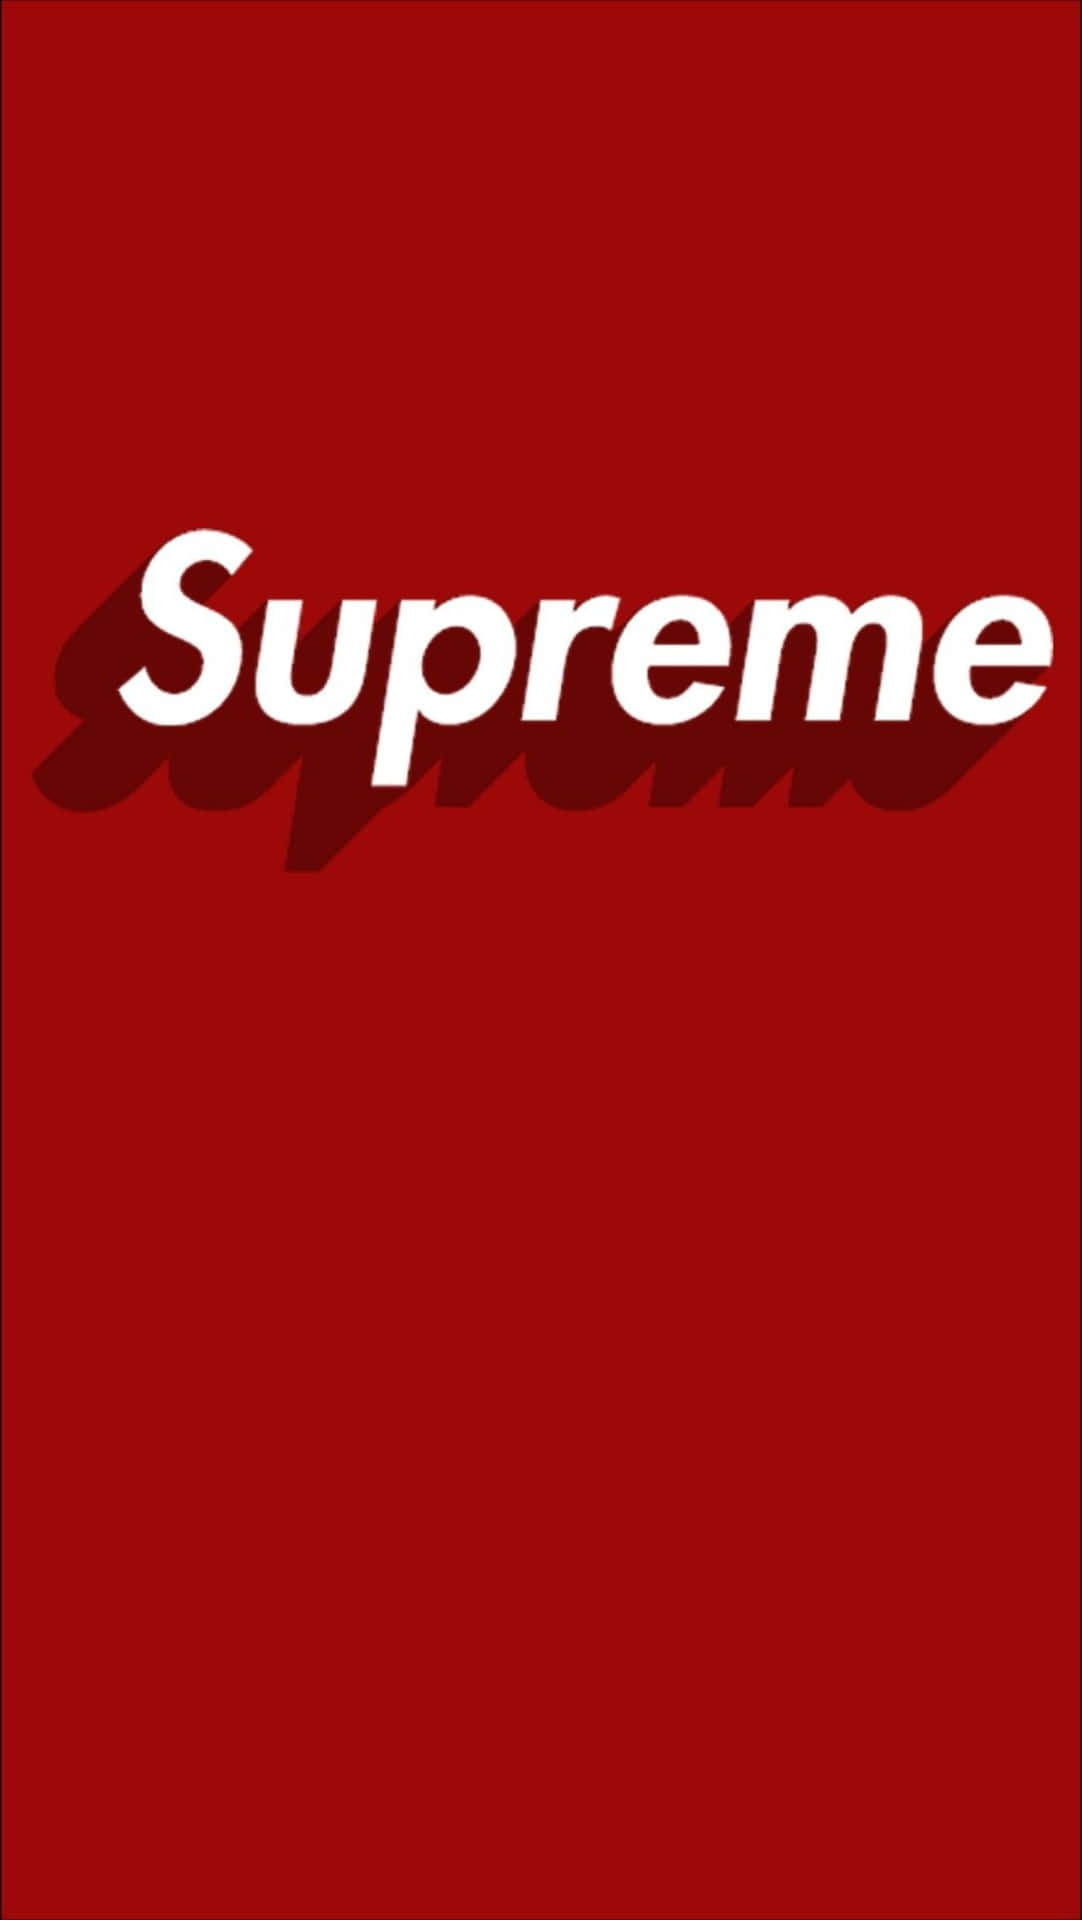 Neon Supreme Logo Wallpaper